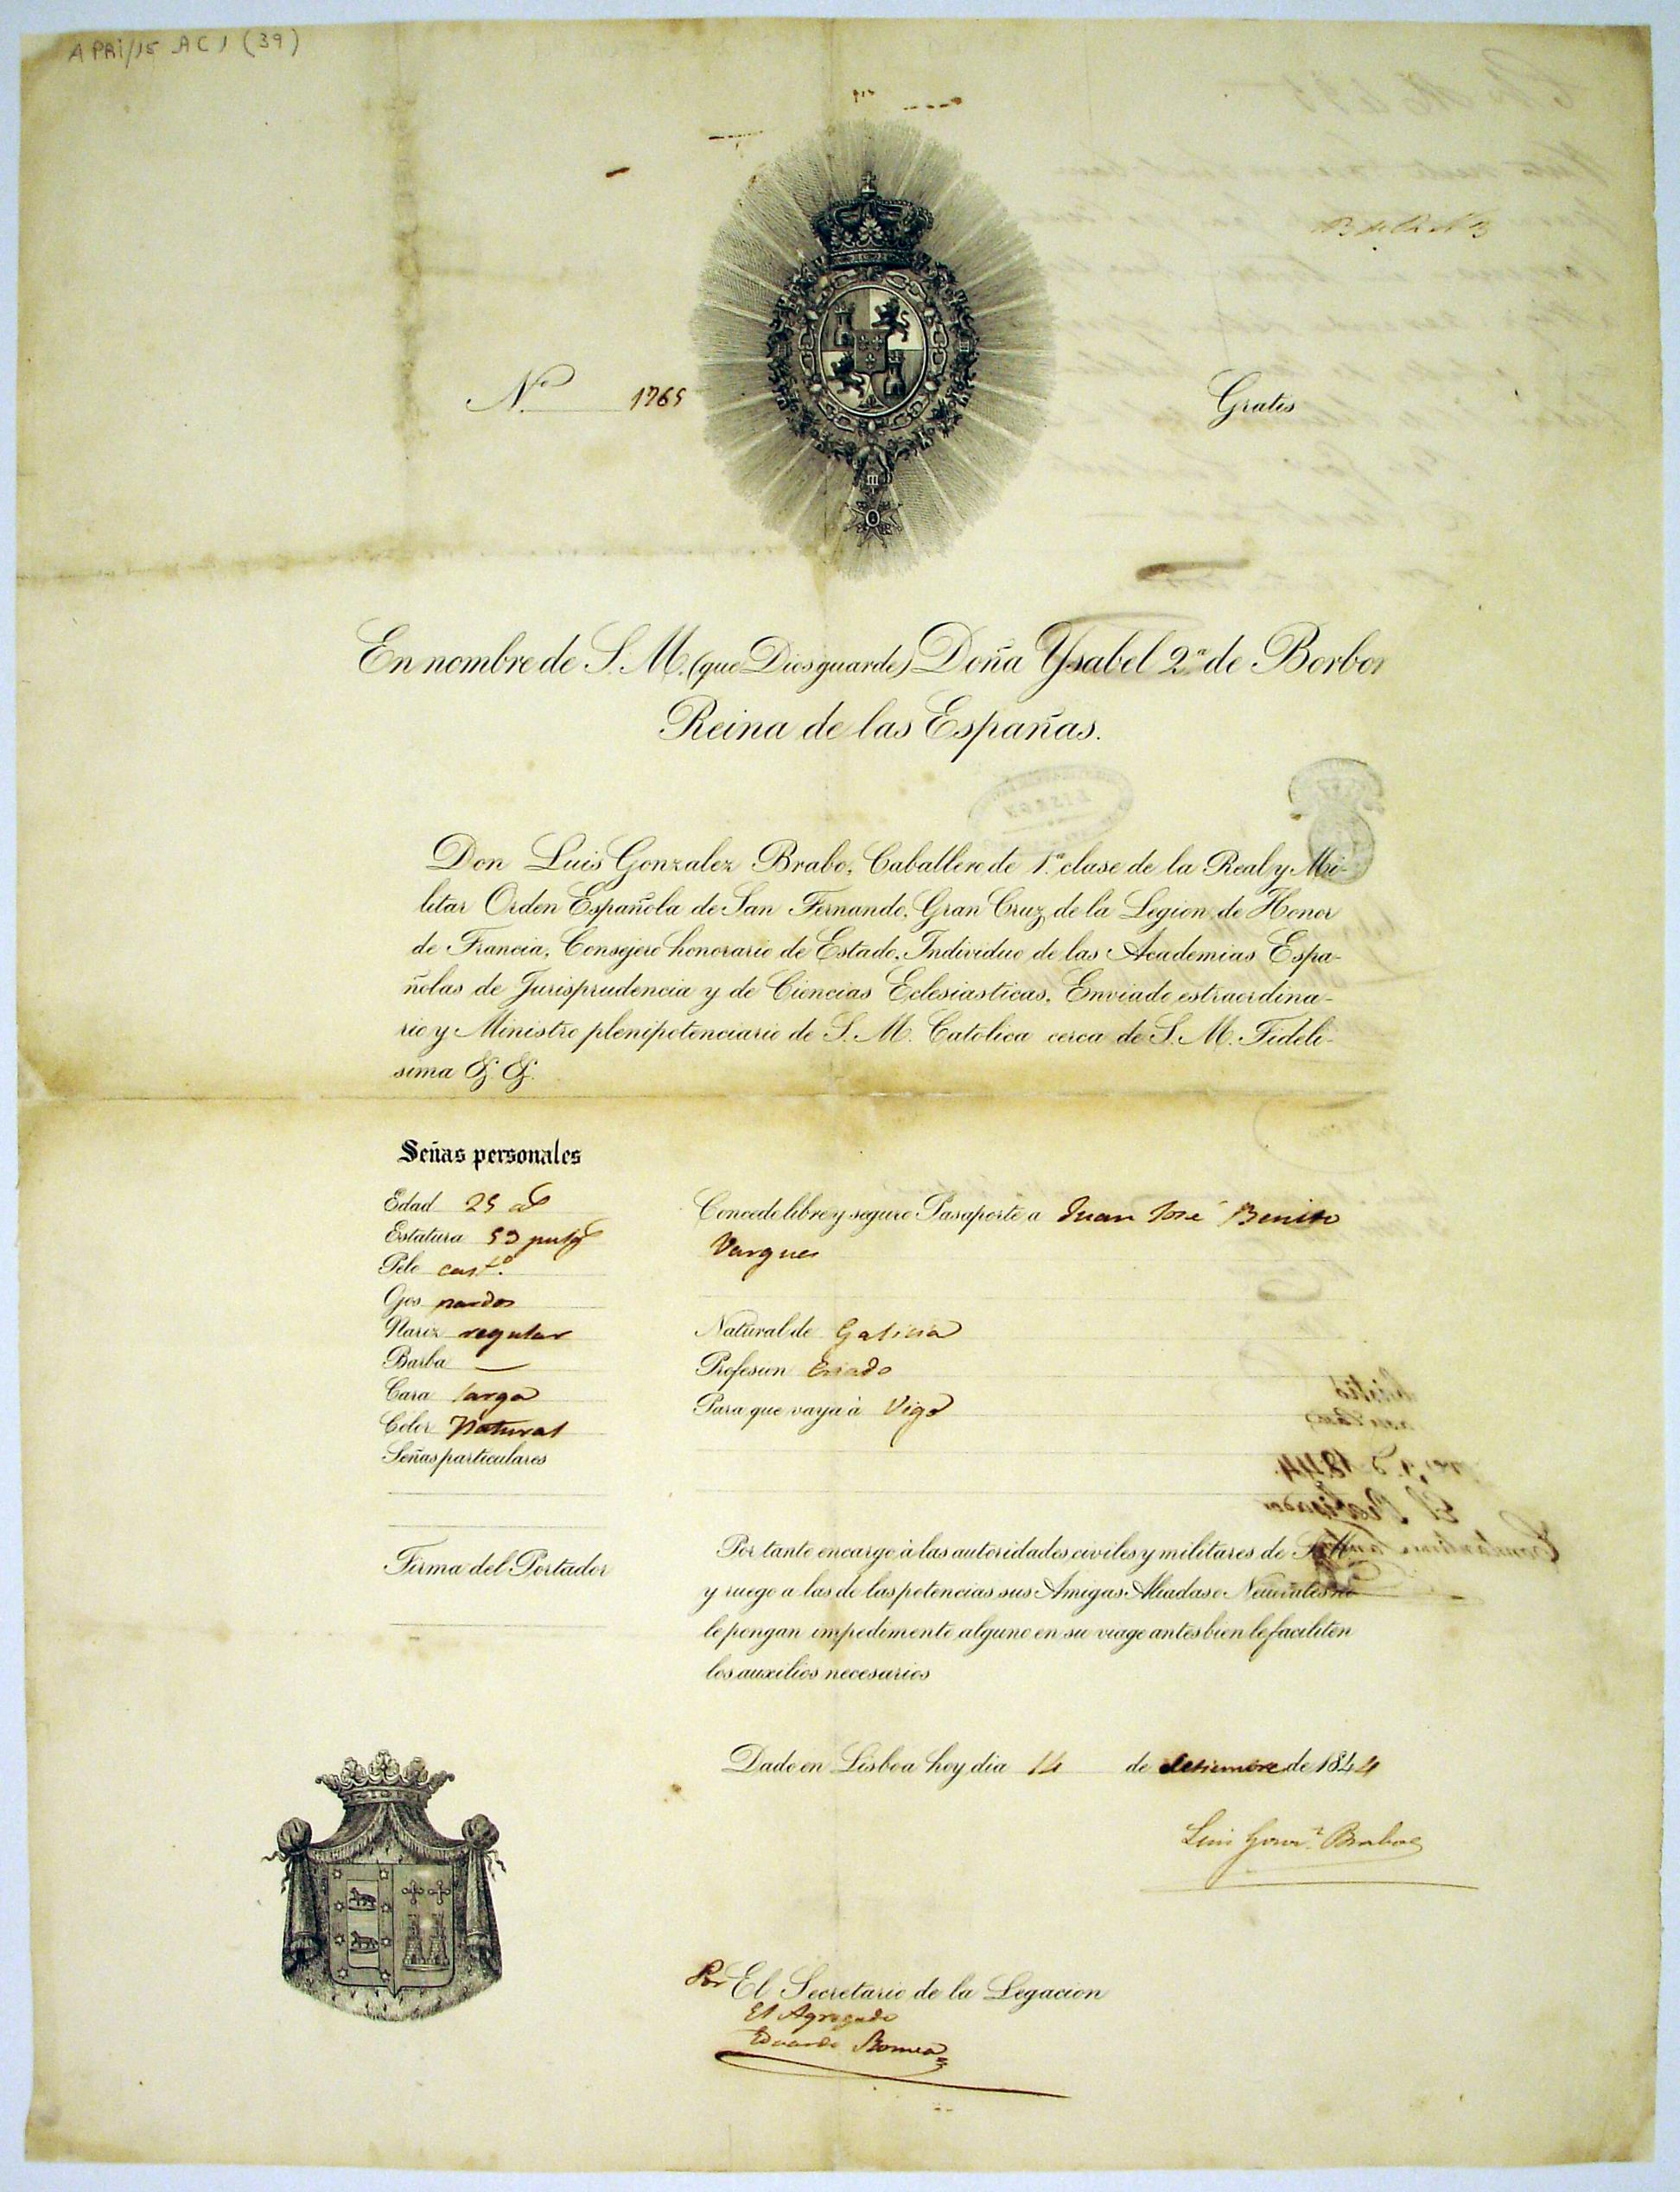 Passaporte de Juan José Benito Vargues